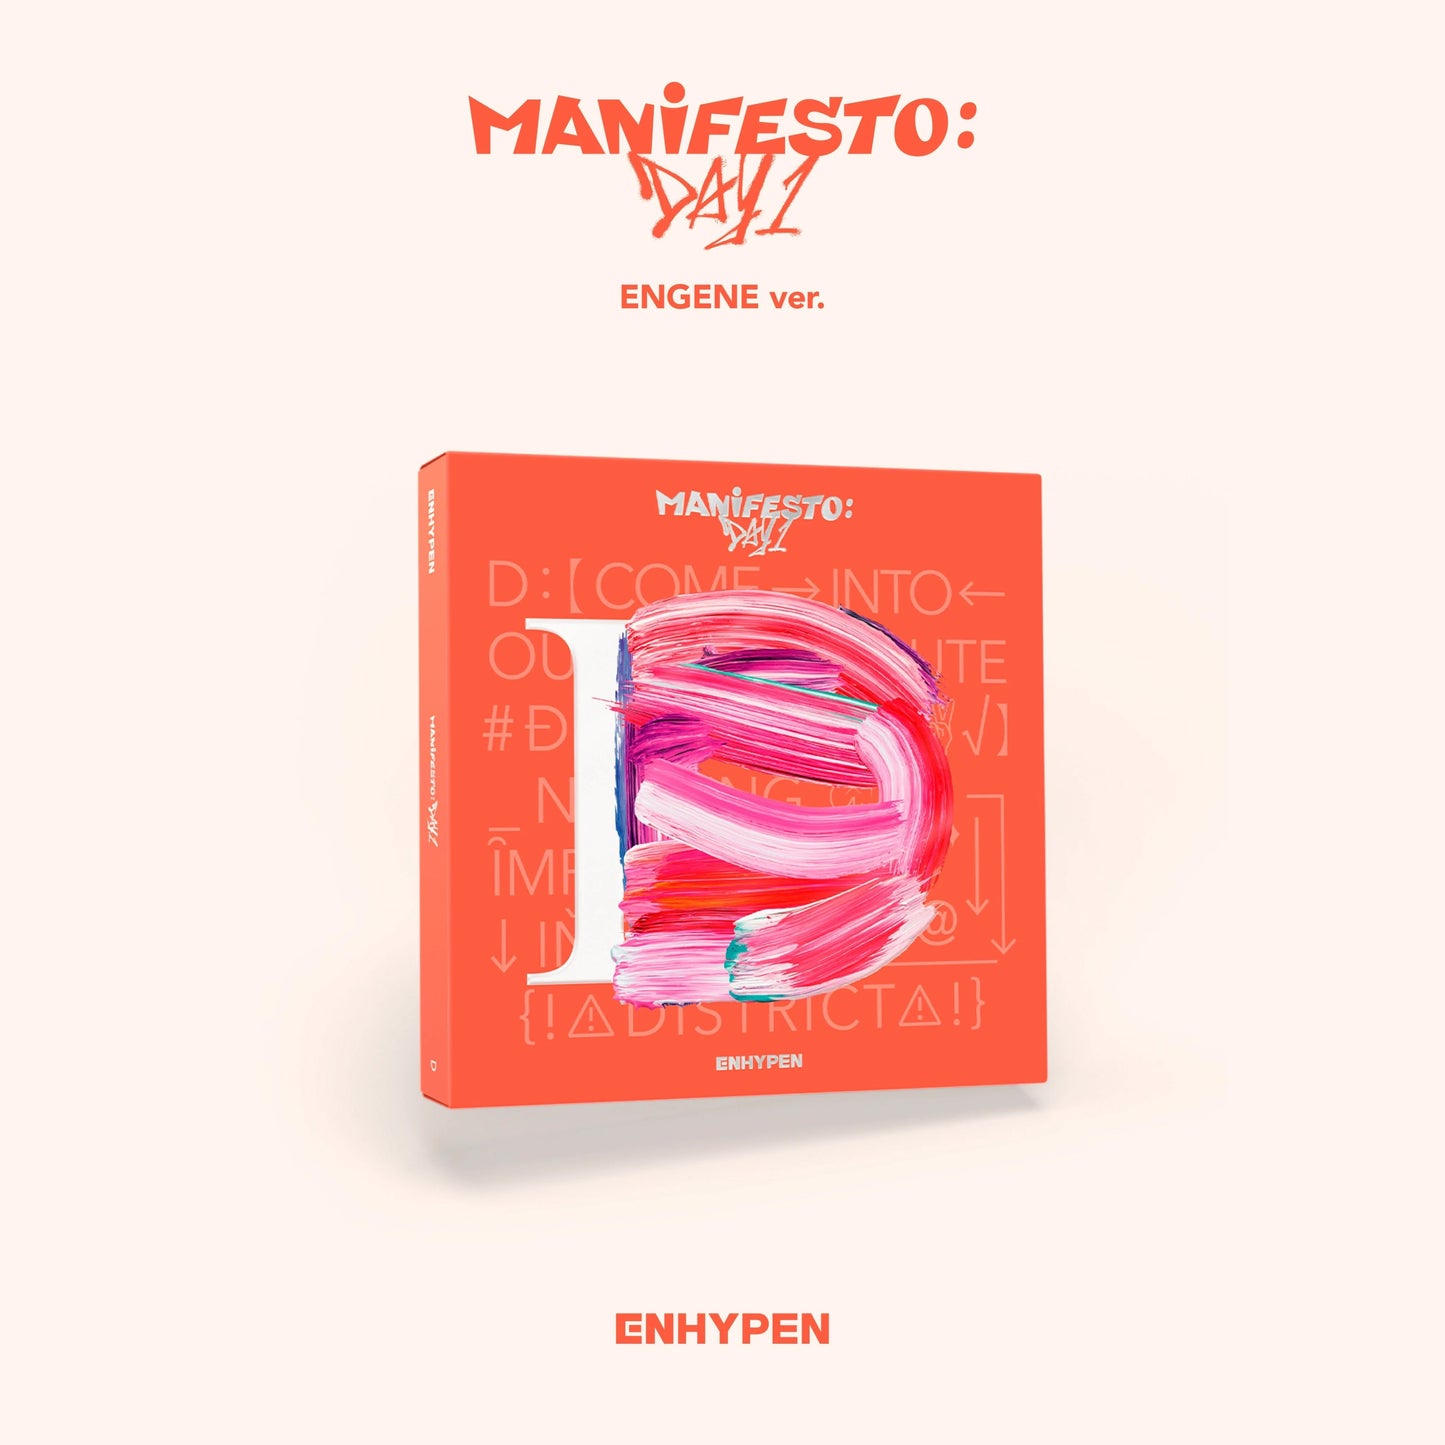 ENHYPEN 엔하이픈 - 3rd EP 'MANIFESTO: Day 1’ (ENGENE Version)